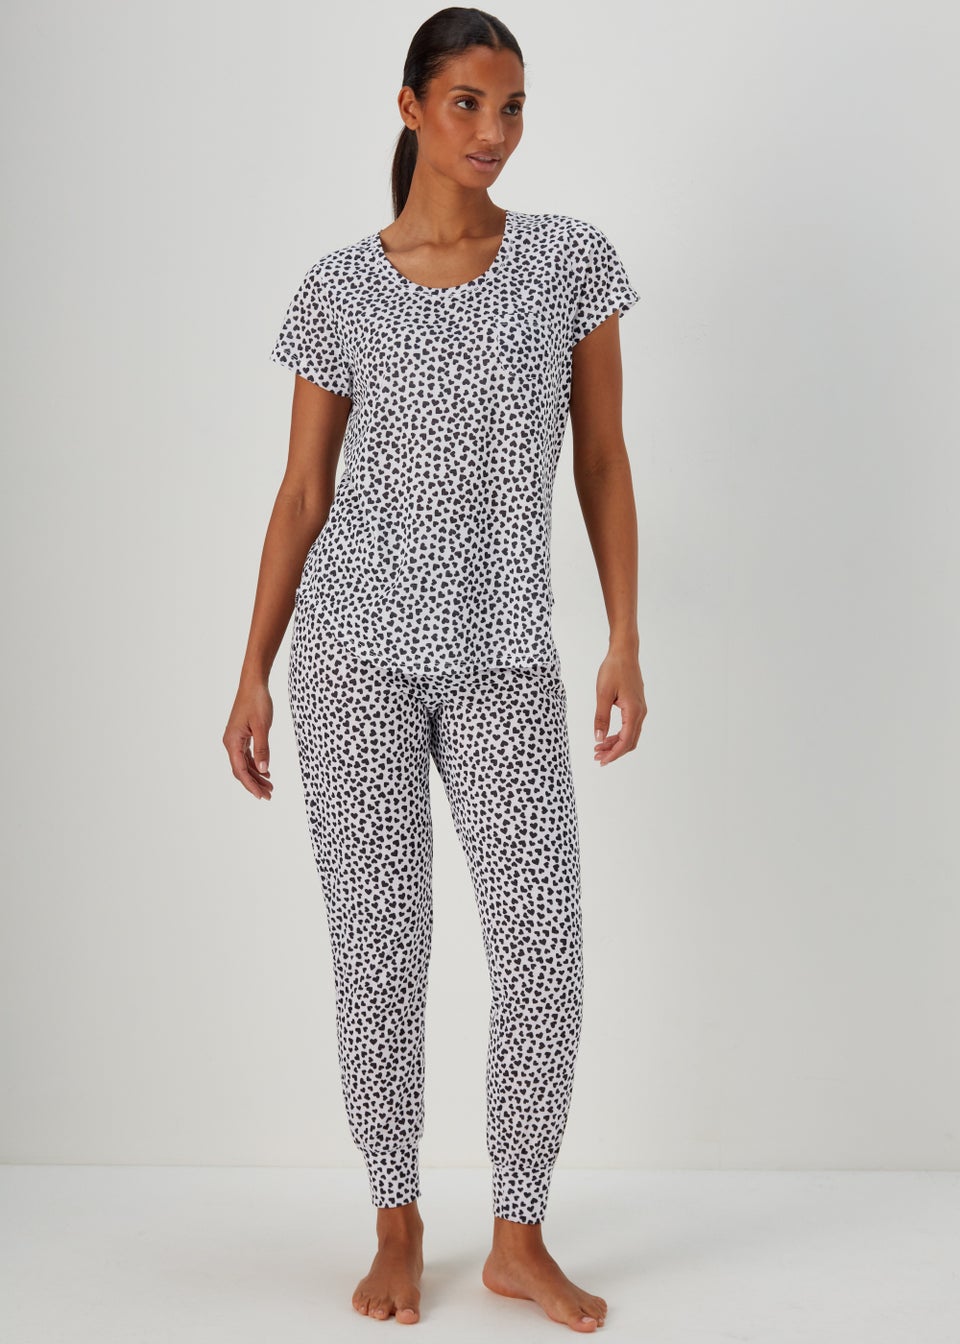 Кремовый пижамный комплект с принтом в виде сердечек, белый